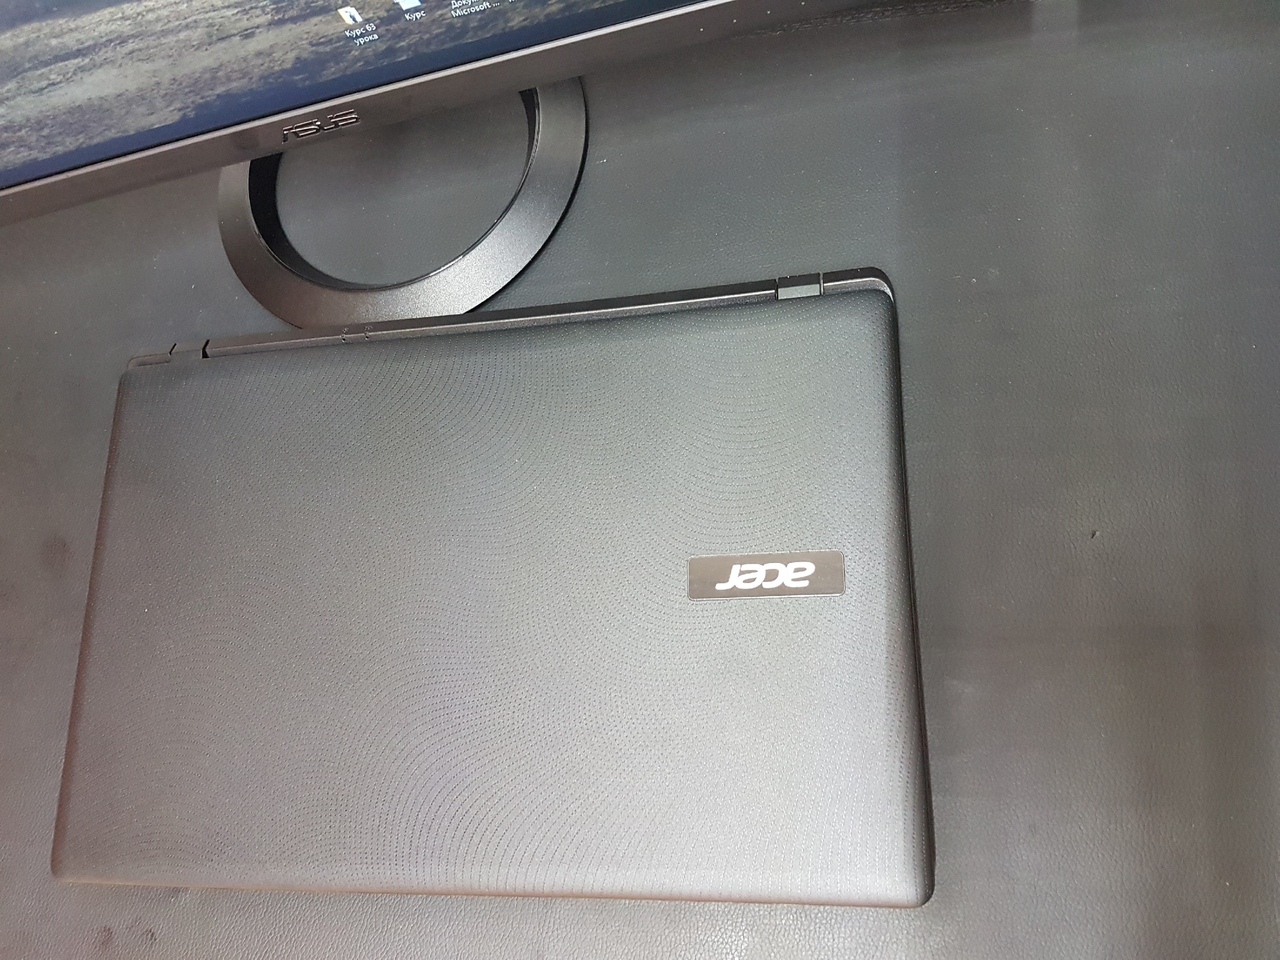 Скупка ноутбука Acer ES1-522-86Y9 1